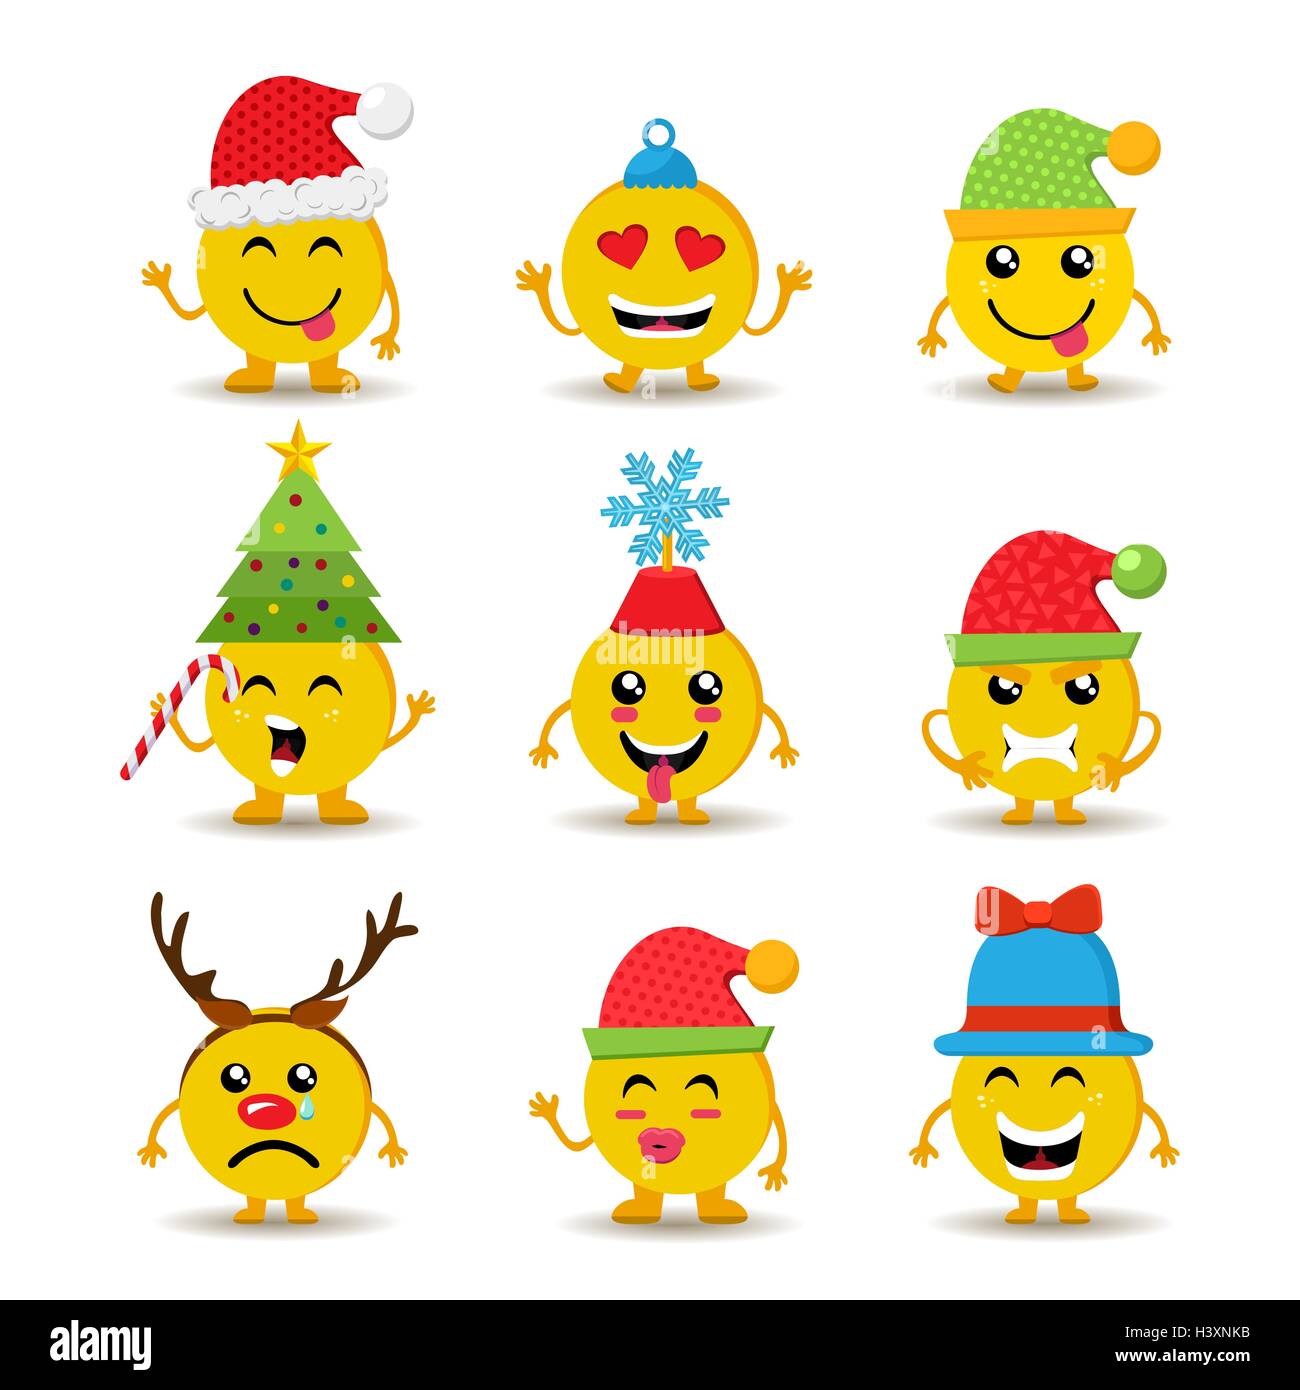 Smile Natale.Set Di Vacanza Smile Natale Icone Emoji Con Graziosi Decorazioni Stagionali E Reazioni Diverse Eps10 Vettore Immagine E Vettoriale Alamy